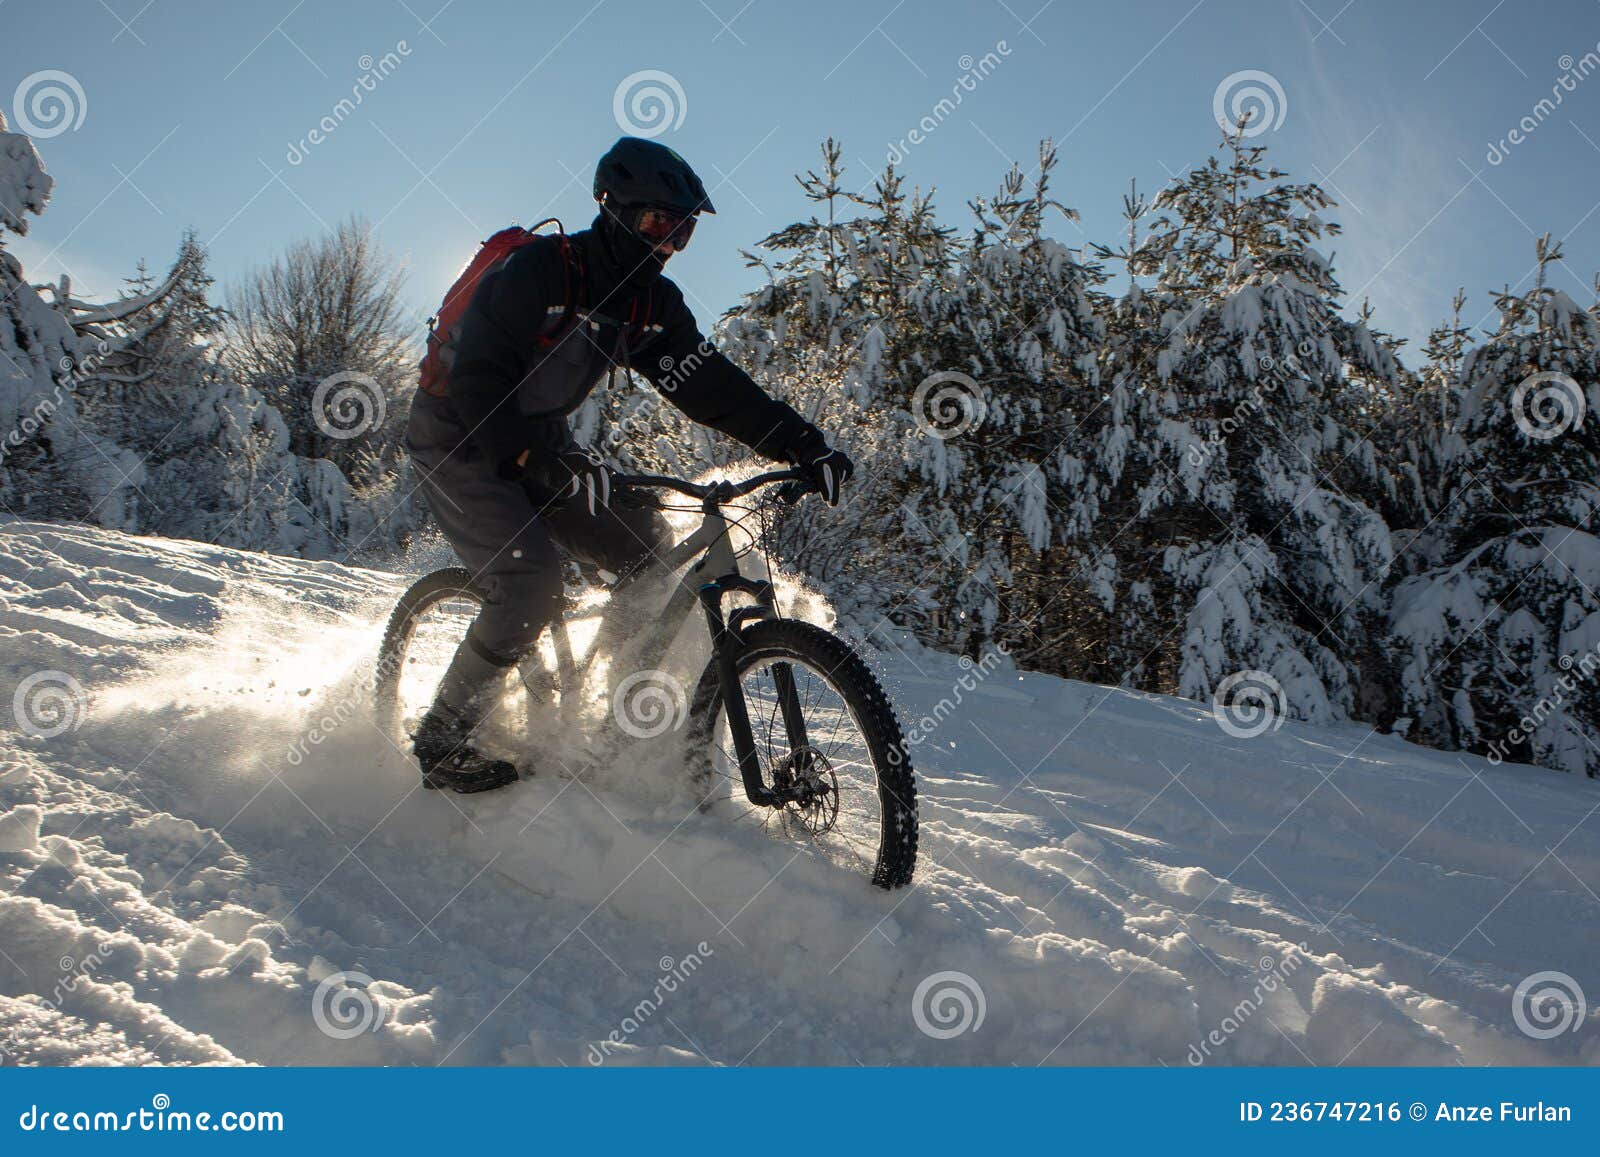 北方骑友冬季骑行穿搭指南 冬季怎么穿骑行服 - 野途网